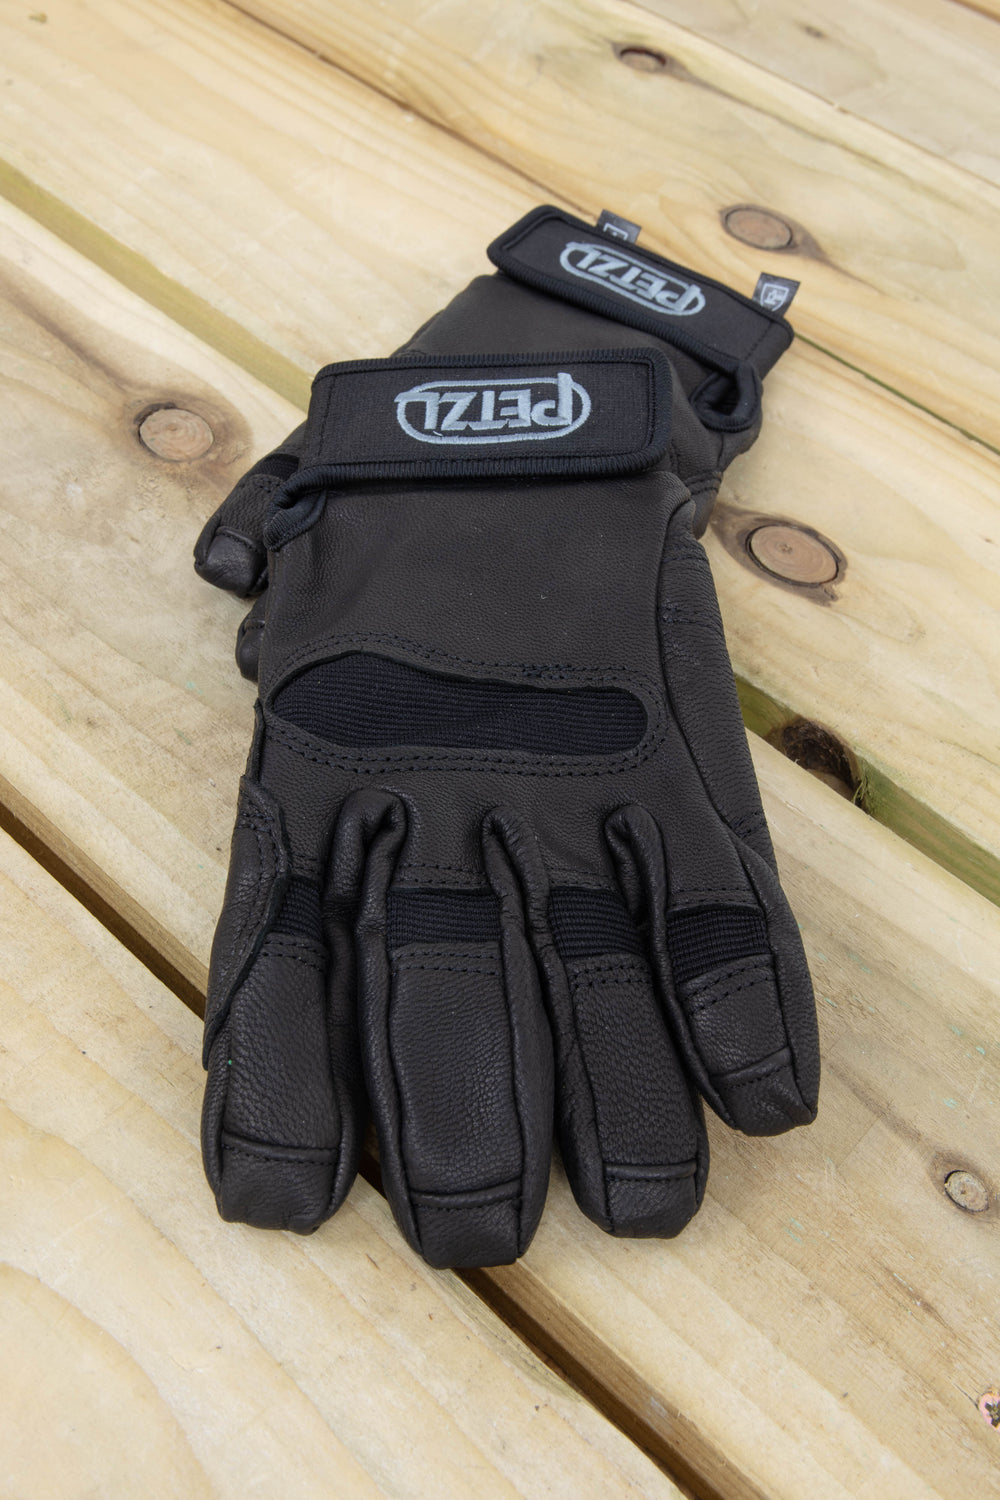 Petzl - Cordex Plus Gloves